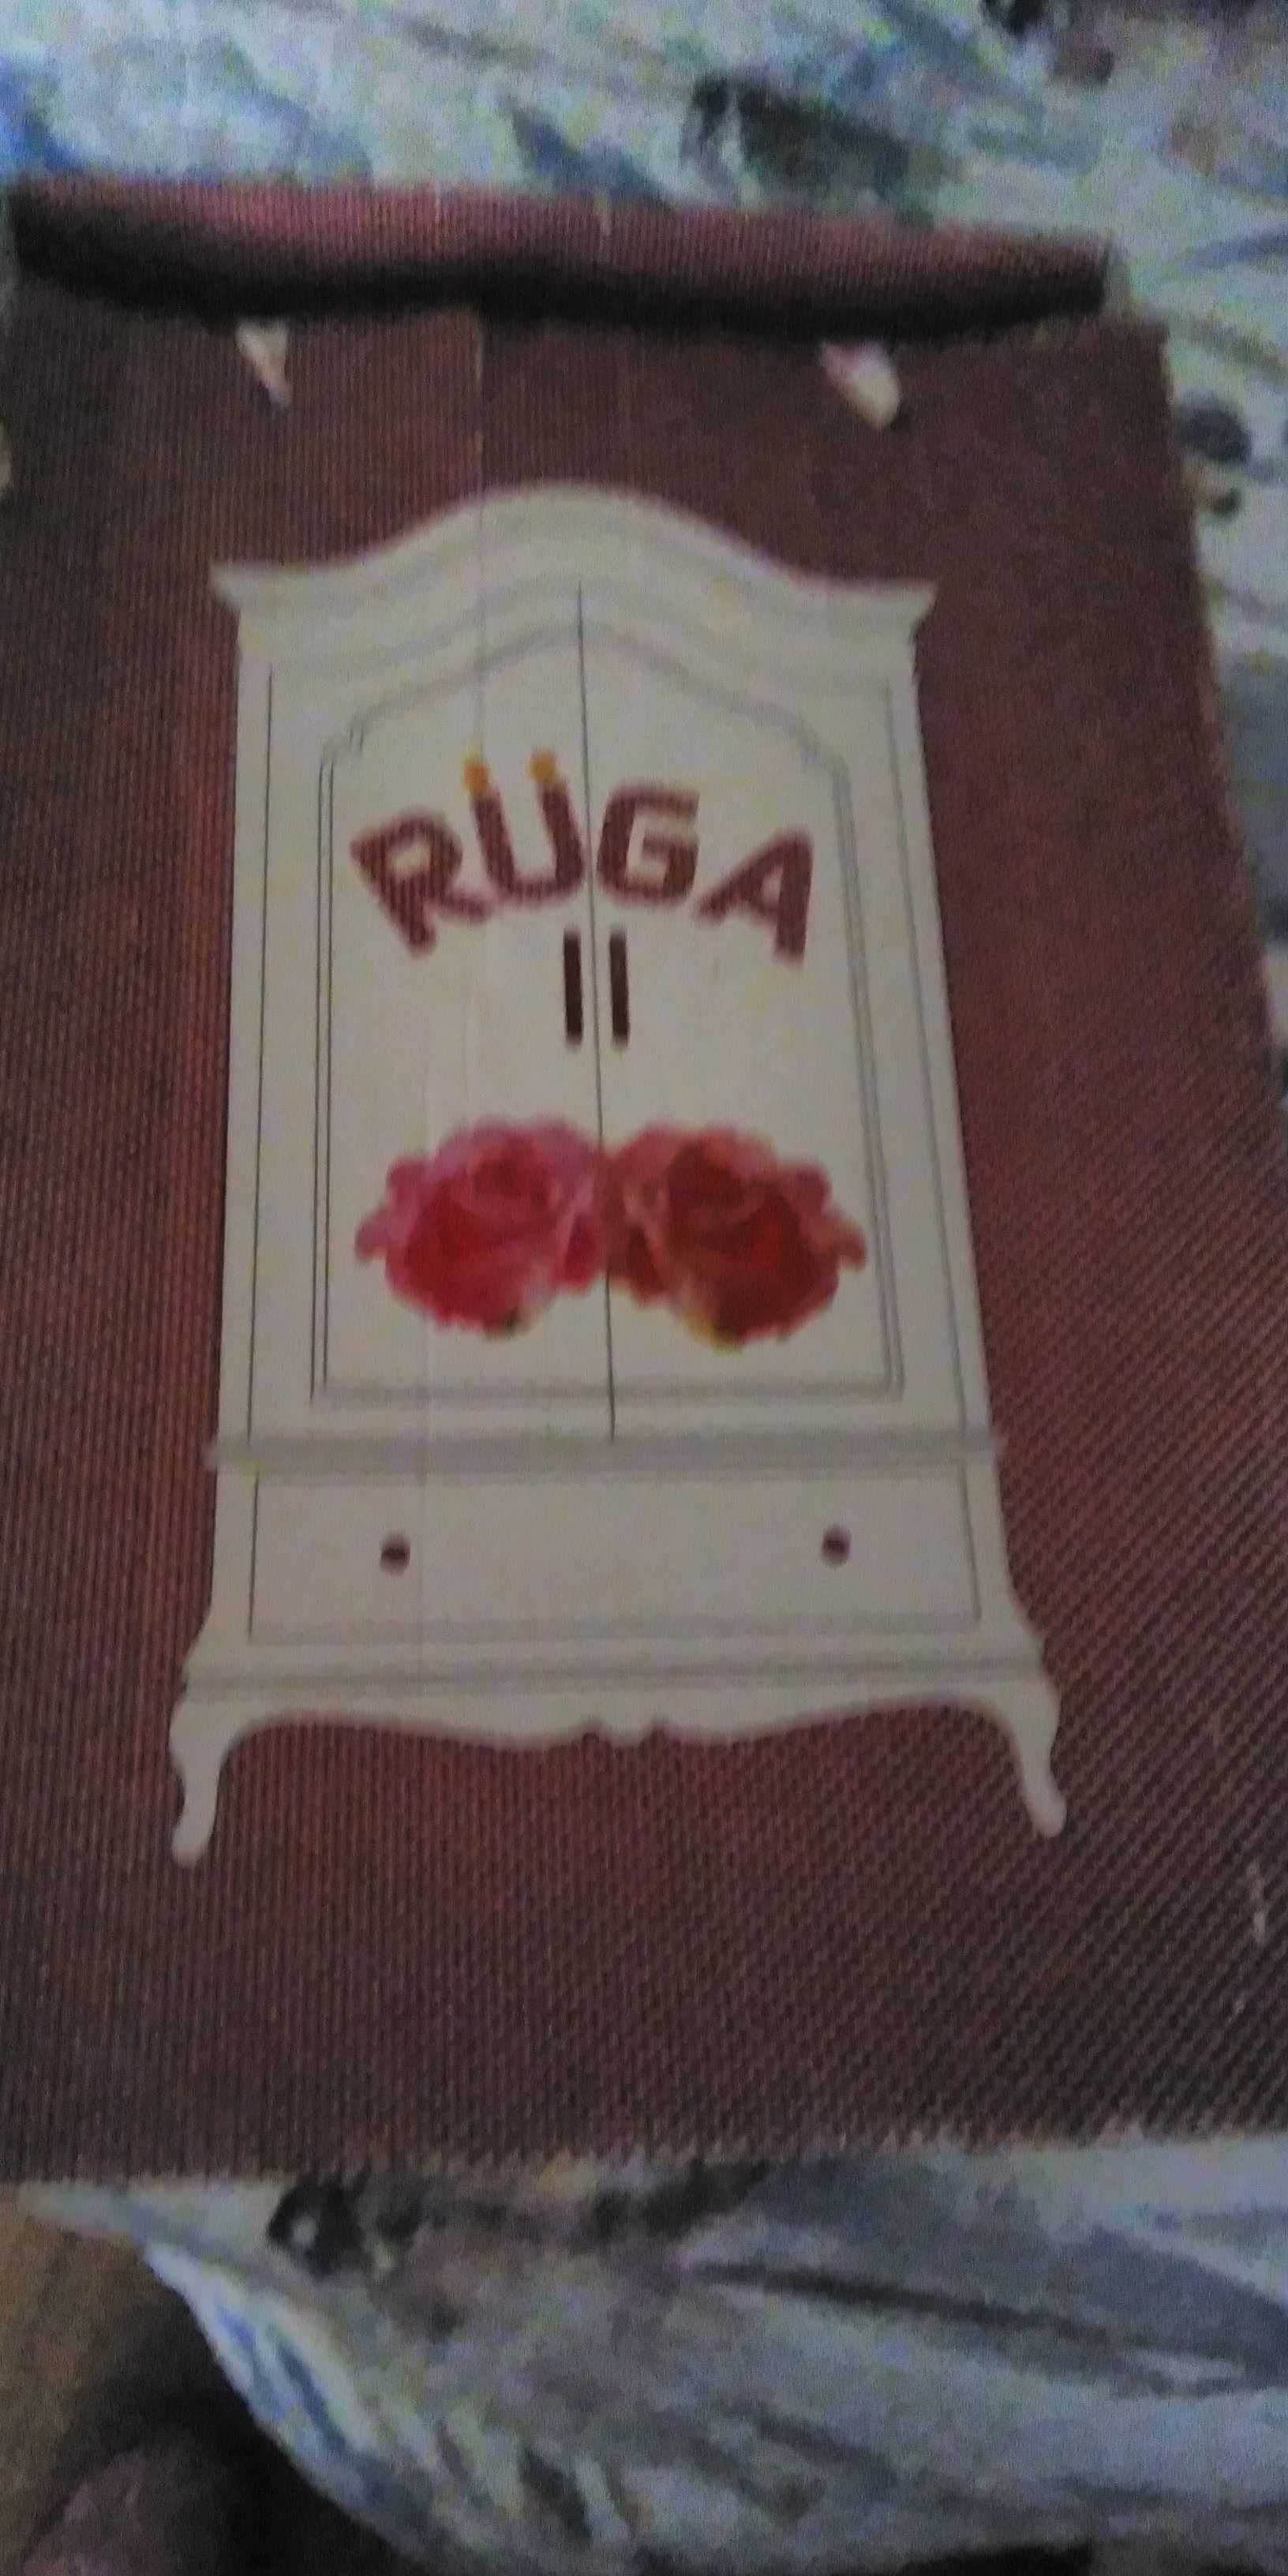 Socas novas da marca Ruga